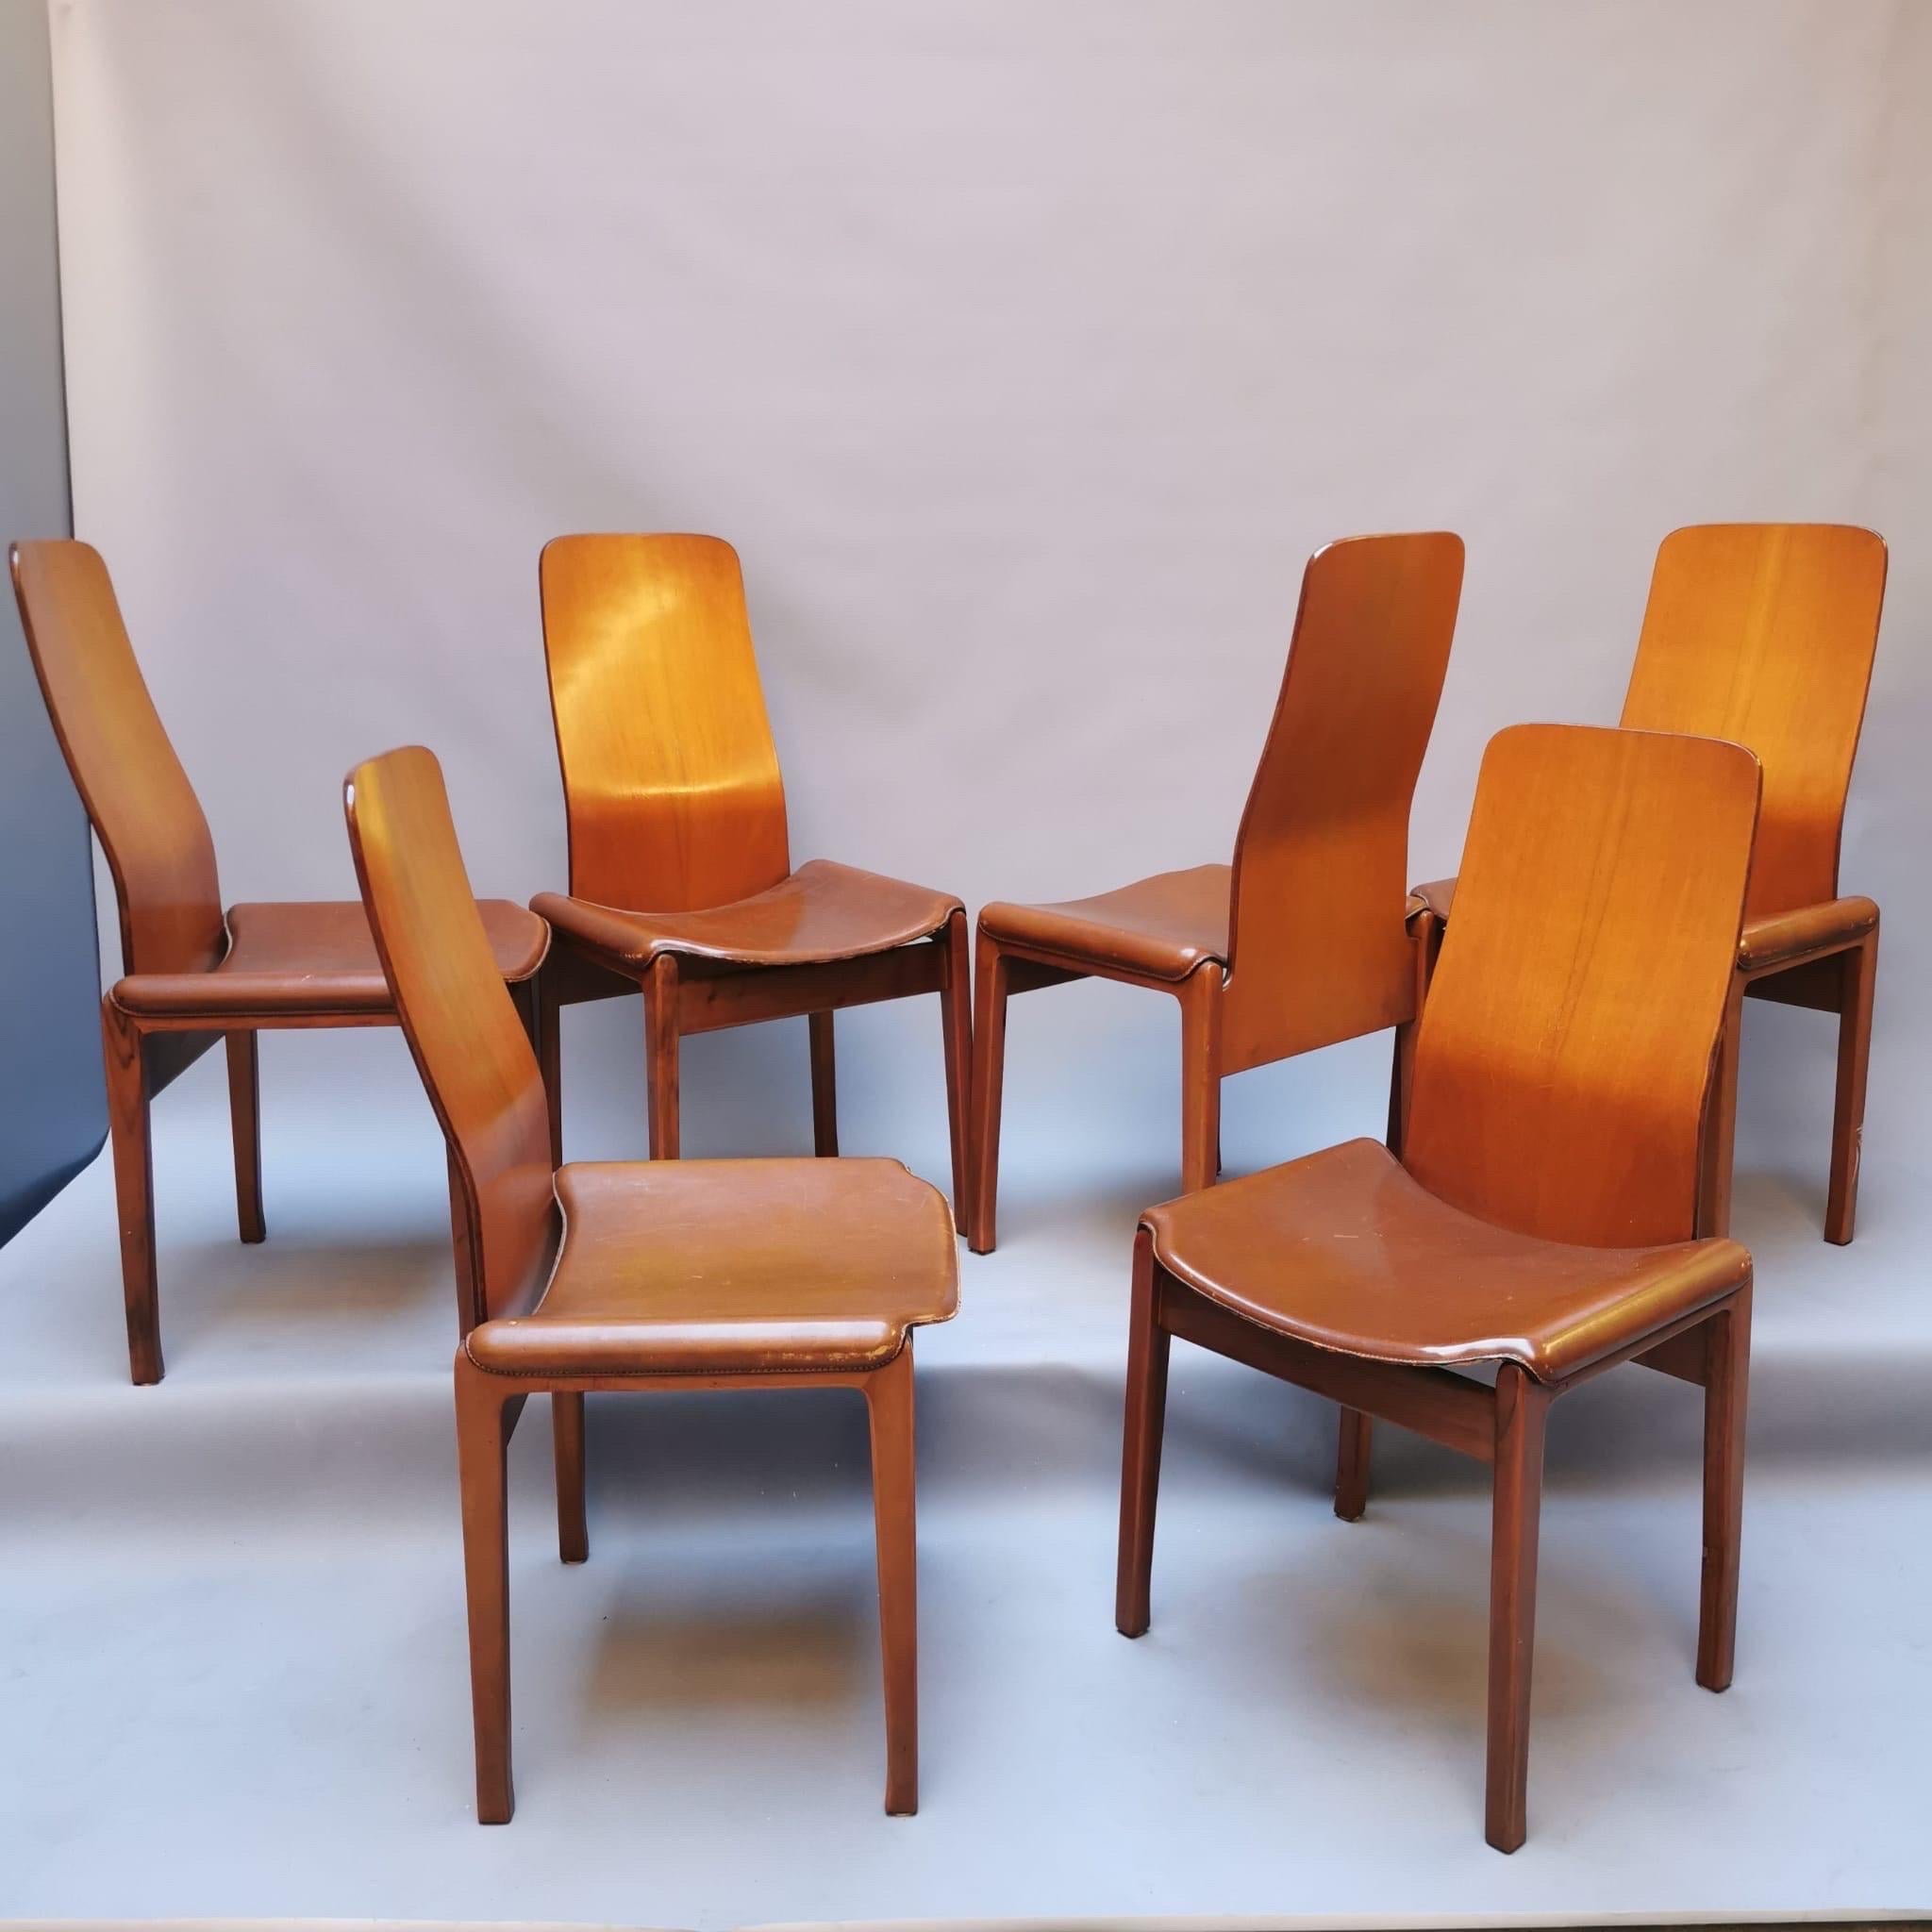 Mid-20th Century Six Fiorenza Chairs by Tito Agnoli, Molteni 